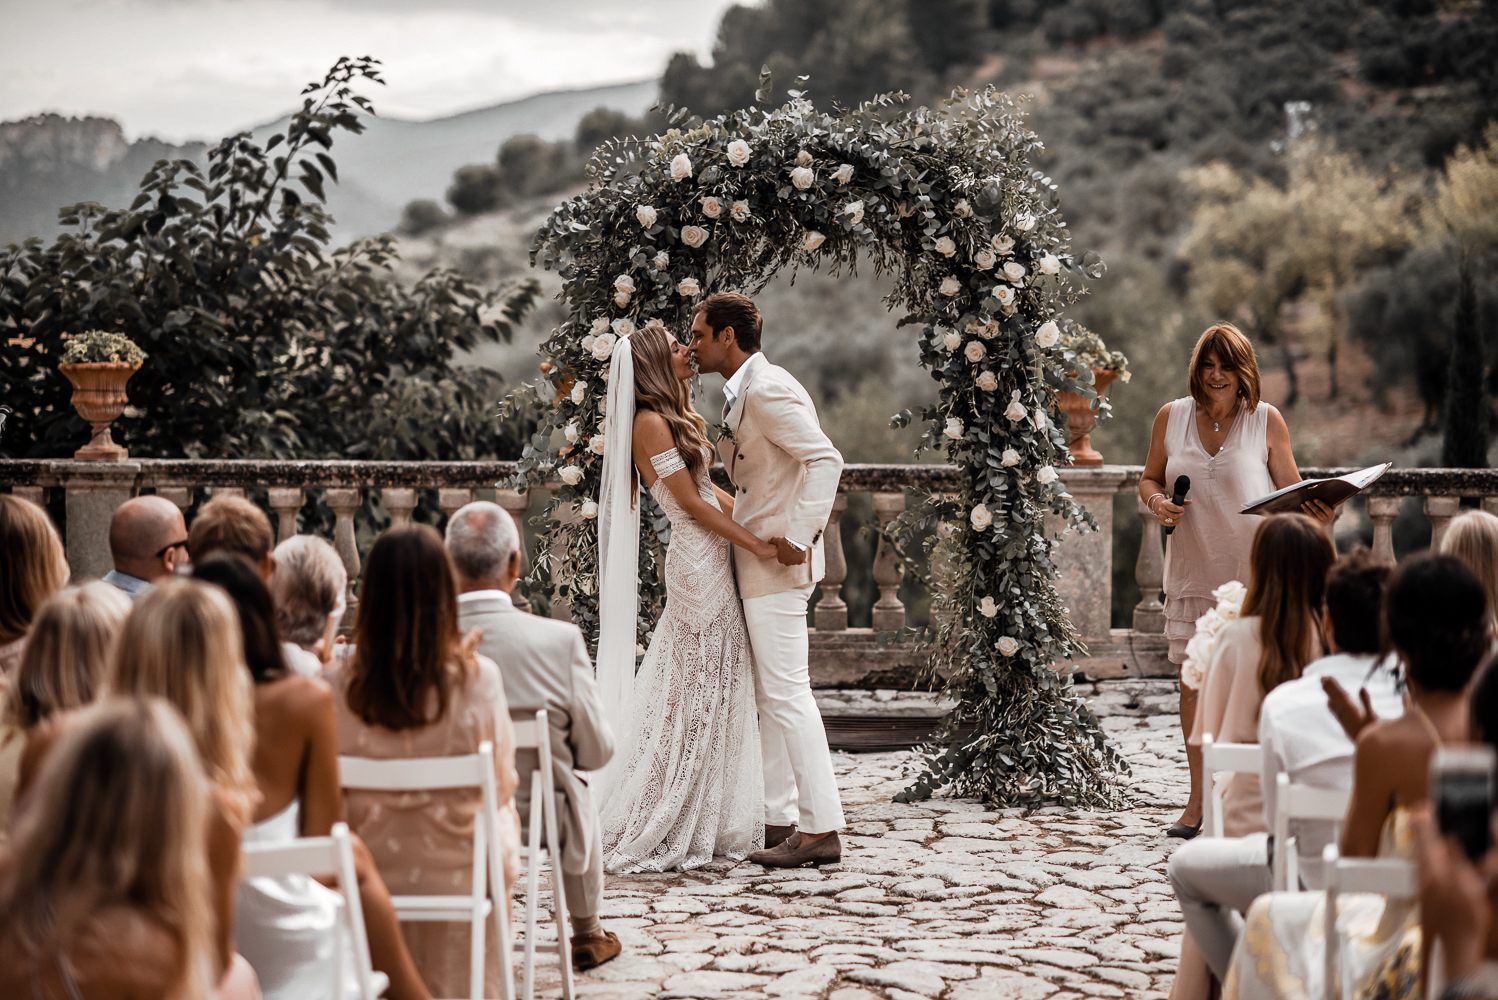 Arco de flores no casamento | Tali Photography